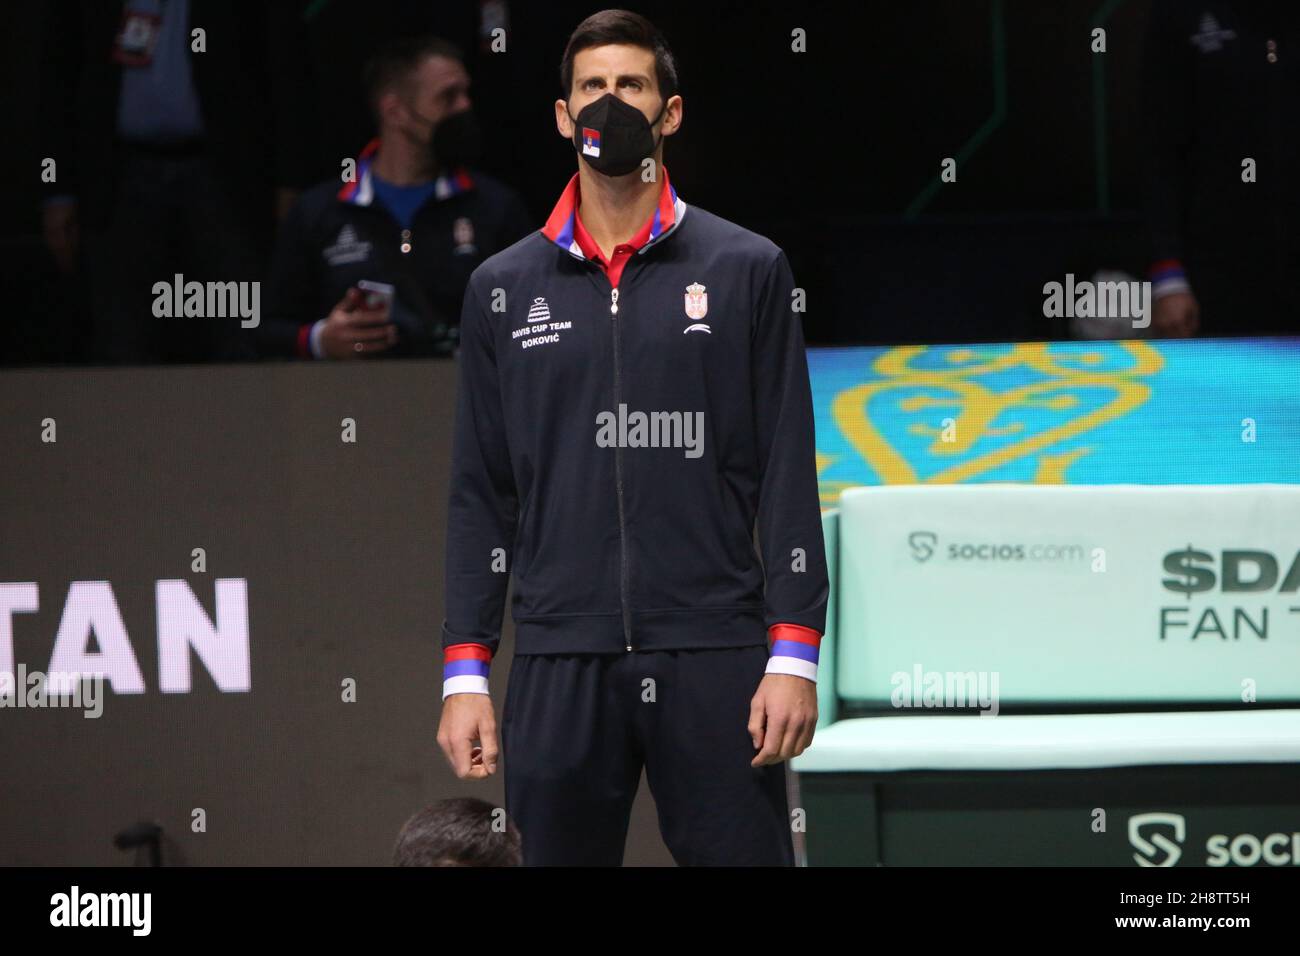 Novak Djokovic de Serbie lors du quart de finale de la coupe Davis 2021, événement de tennis le 1er décembre 2021 à Madrid Arena, Espagne - photo Laurent Lairys / DPPI Banque D'Images